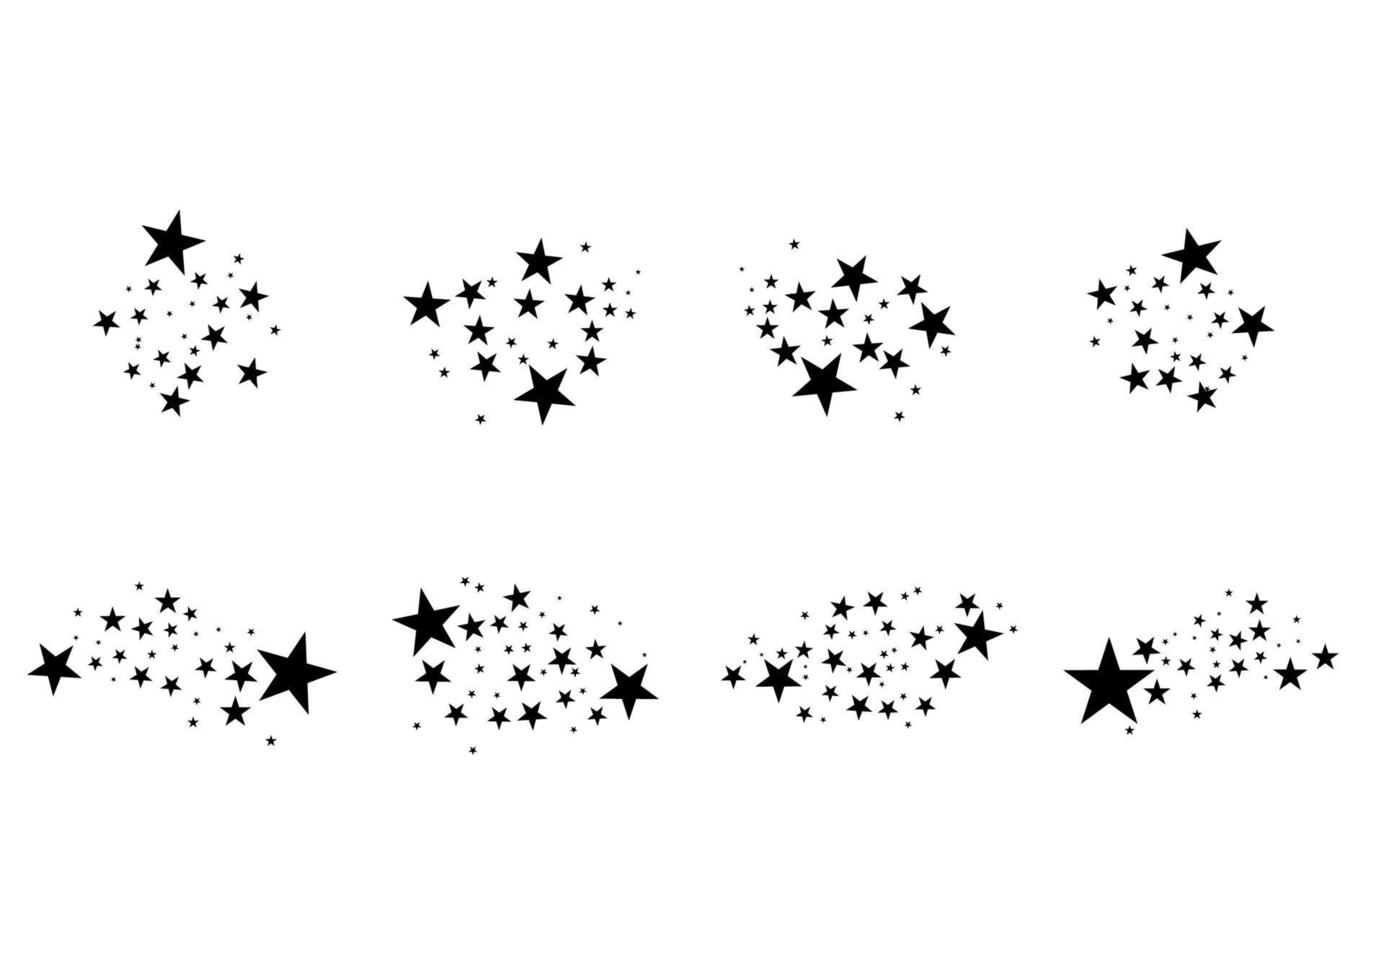 uppsättning fallande stjärna. moln av stjärnor isolerad på vit bakgrund. vektor illustration. meteoroid, komet, asteroid, stjärnor